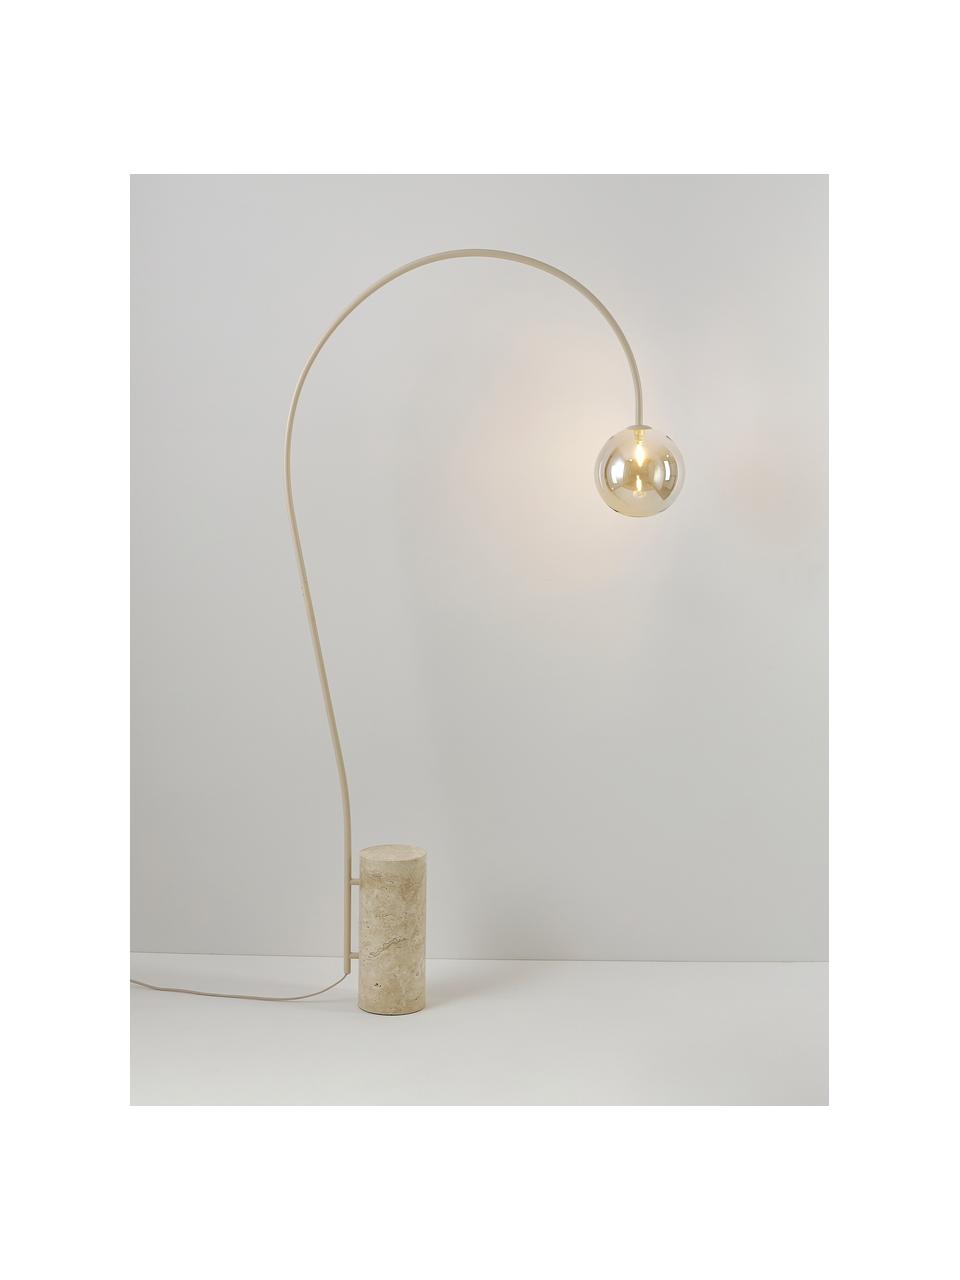 Grosse Bogenlampe Cora mit Travertin-Fuss, Lampenschirm: Glas, Gestell: Stahl, beschichtet, Beige, Travertin, H 167 cm